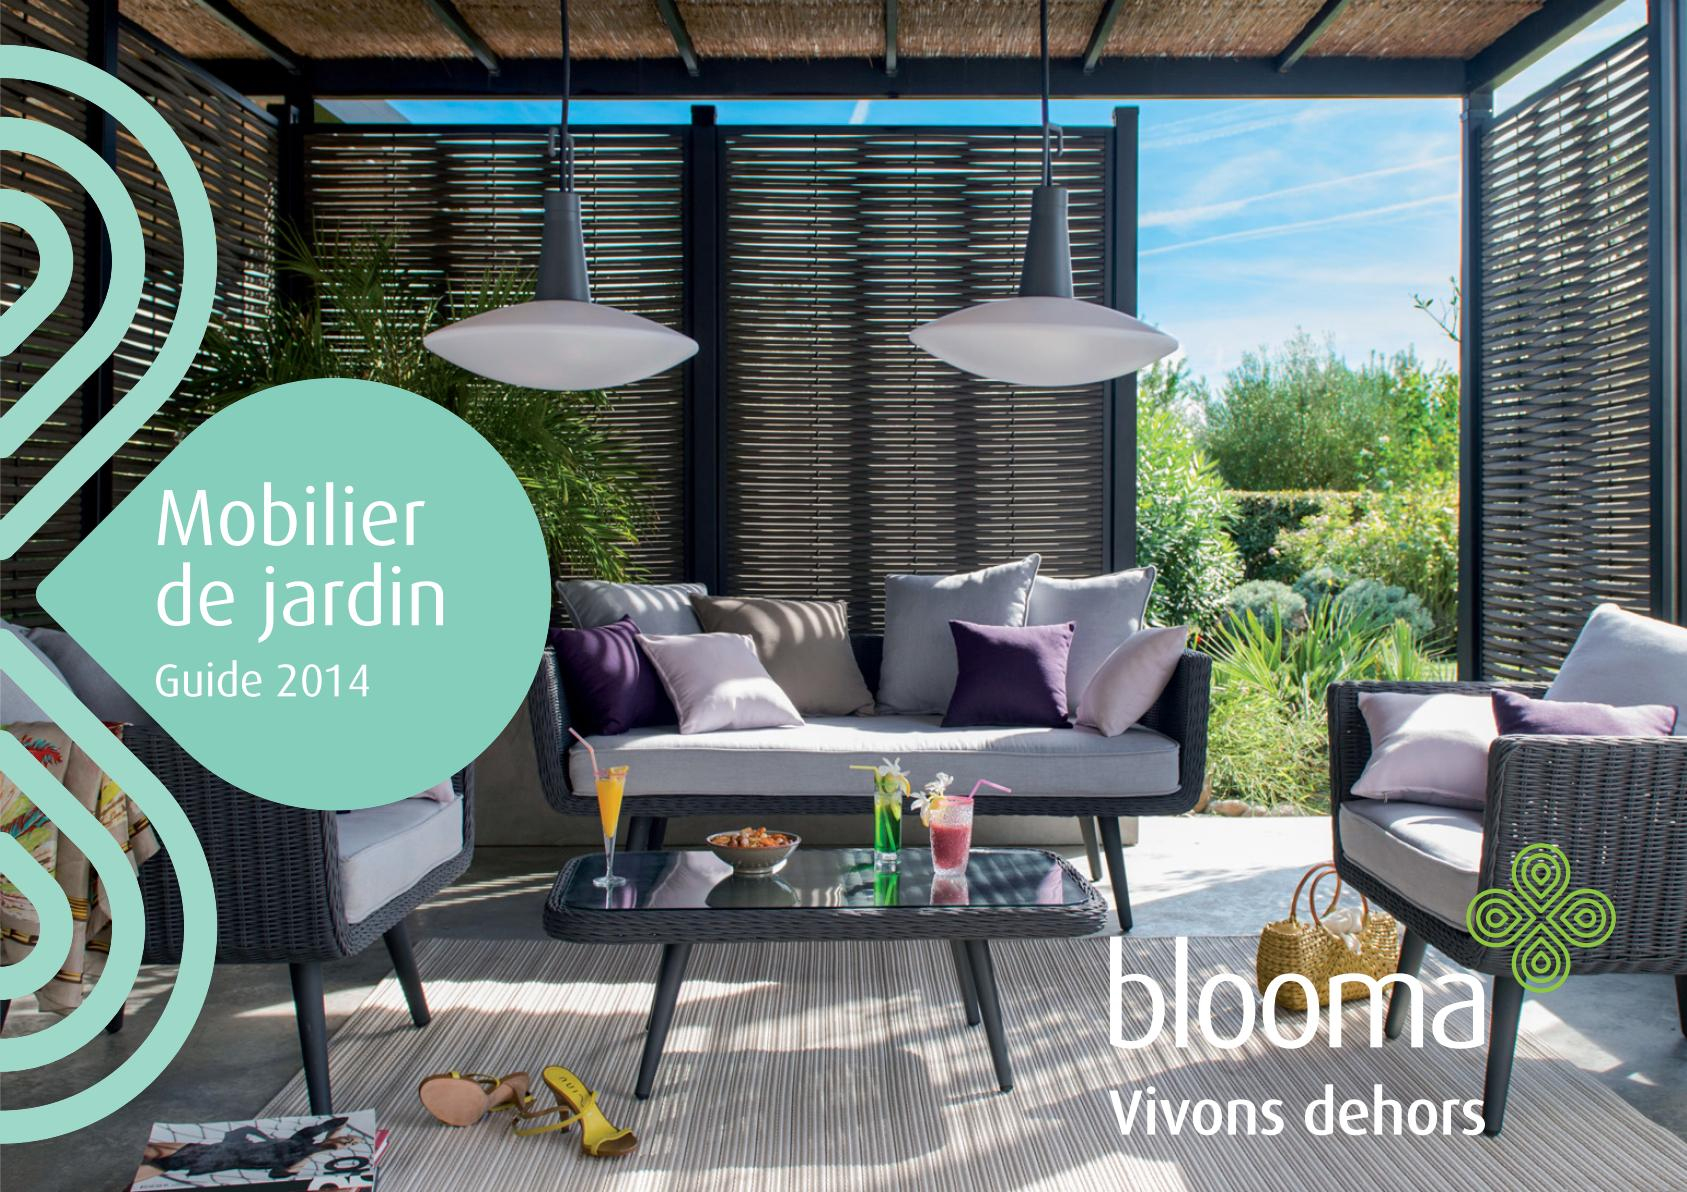 Catalogue Castorama Blooma Mobilier De Jardin 2014 ... destiné Salon De Jardin Blooma